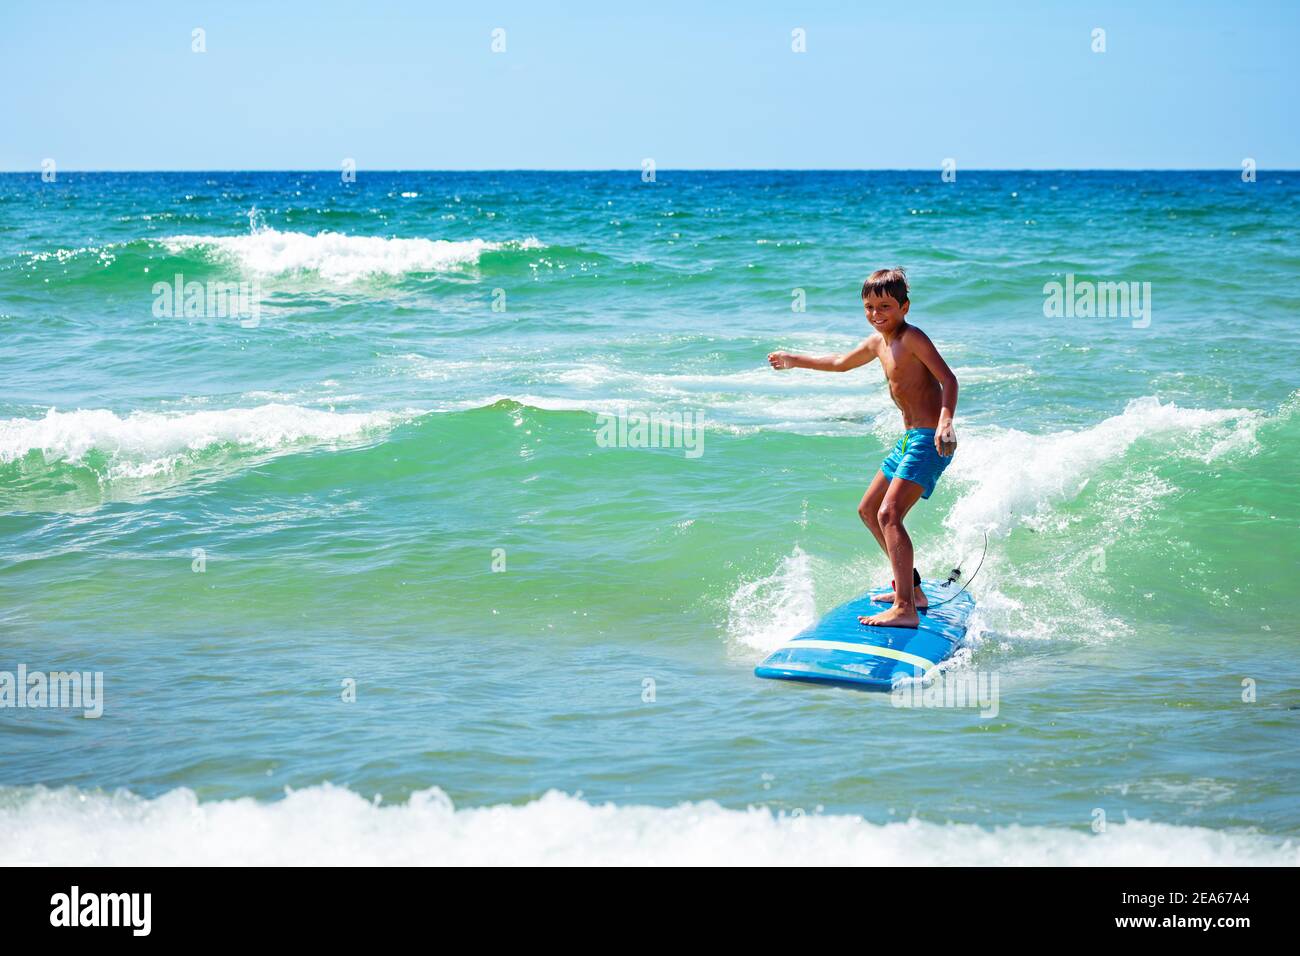 Junge 10 Jahre alt Junge Aktion Foto Fahrt Surfbrett auf Eine Welle im Meer Stockfoto